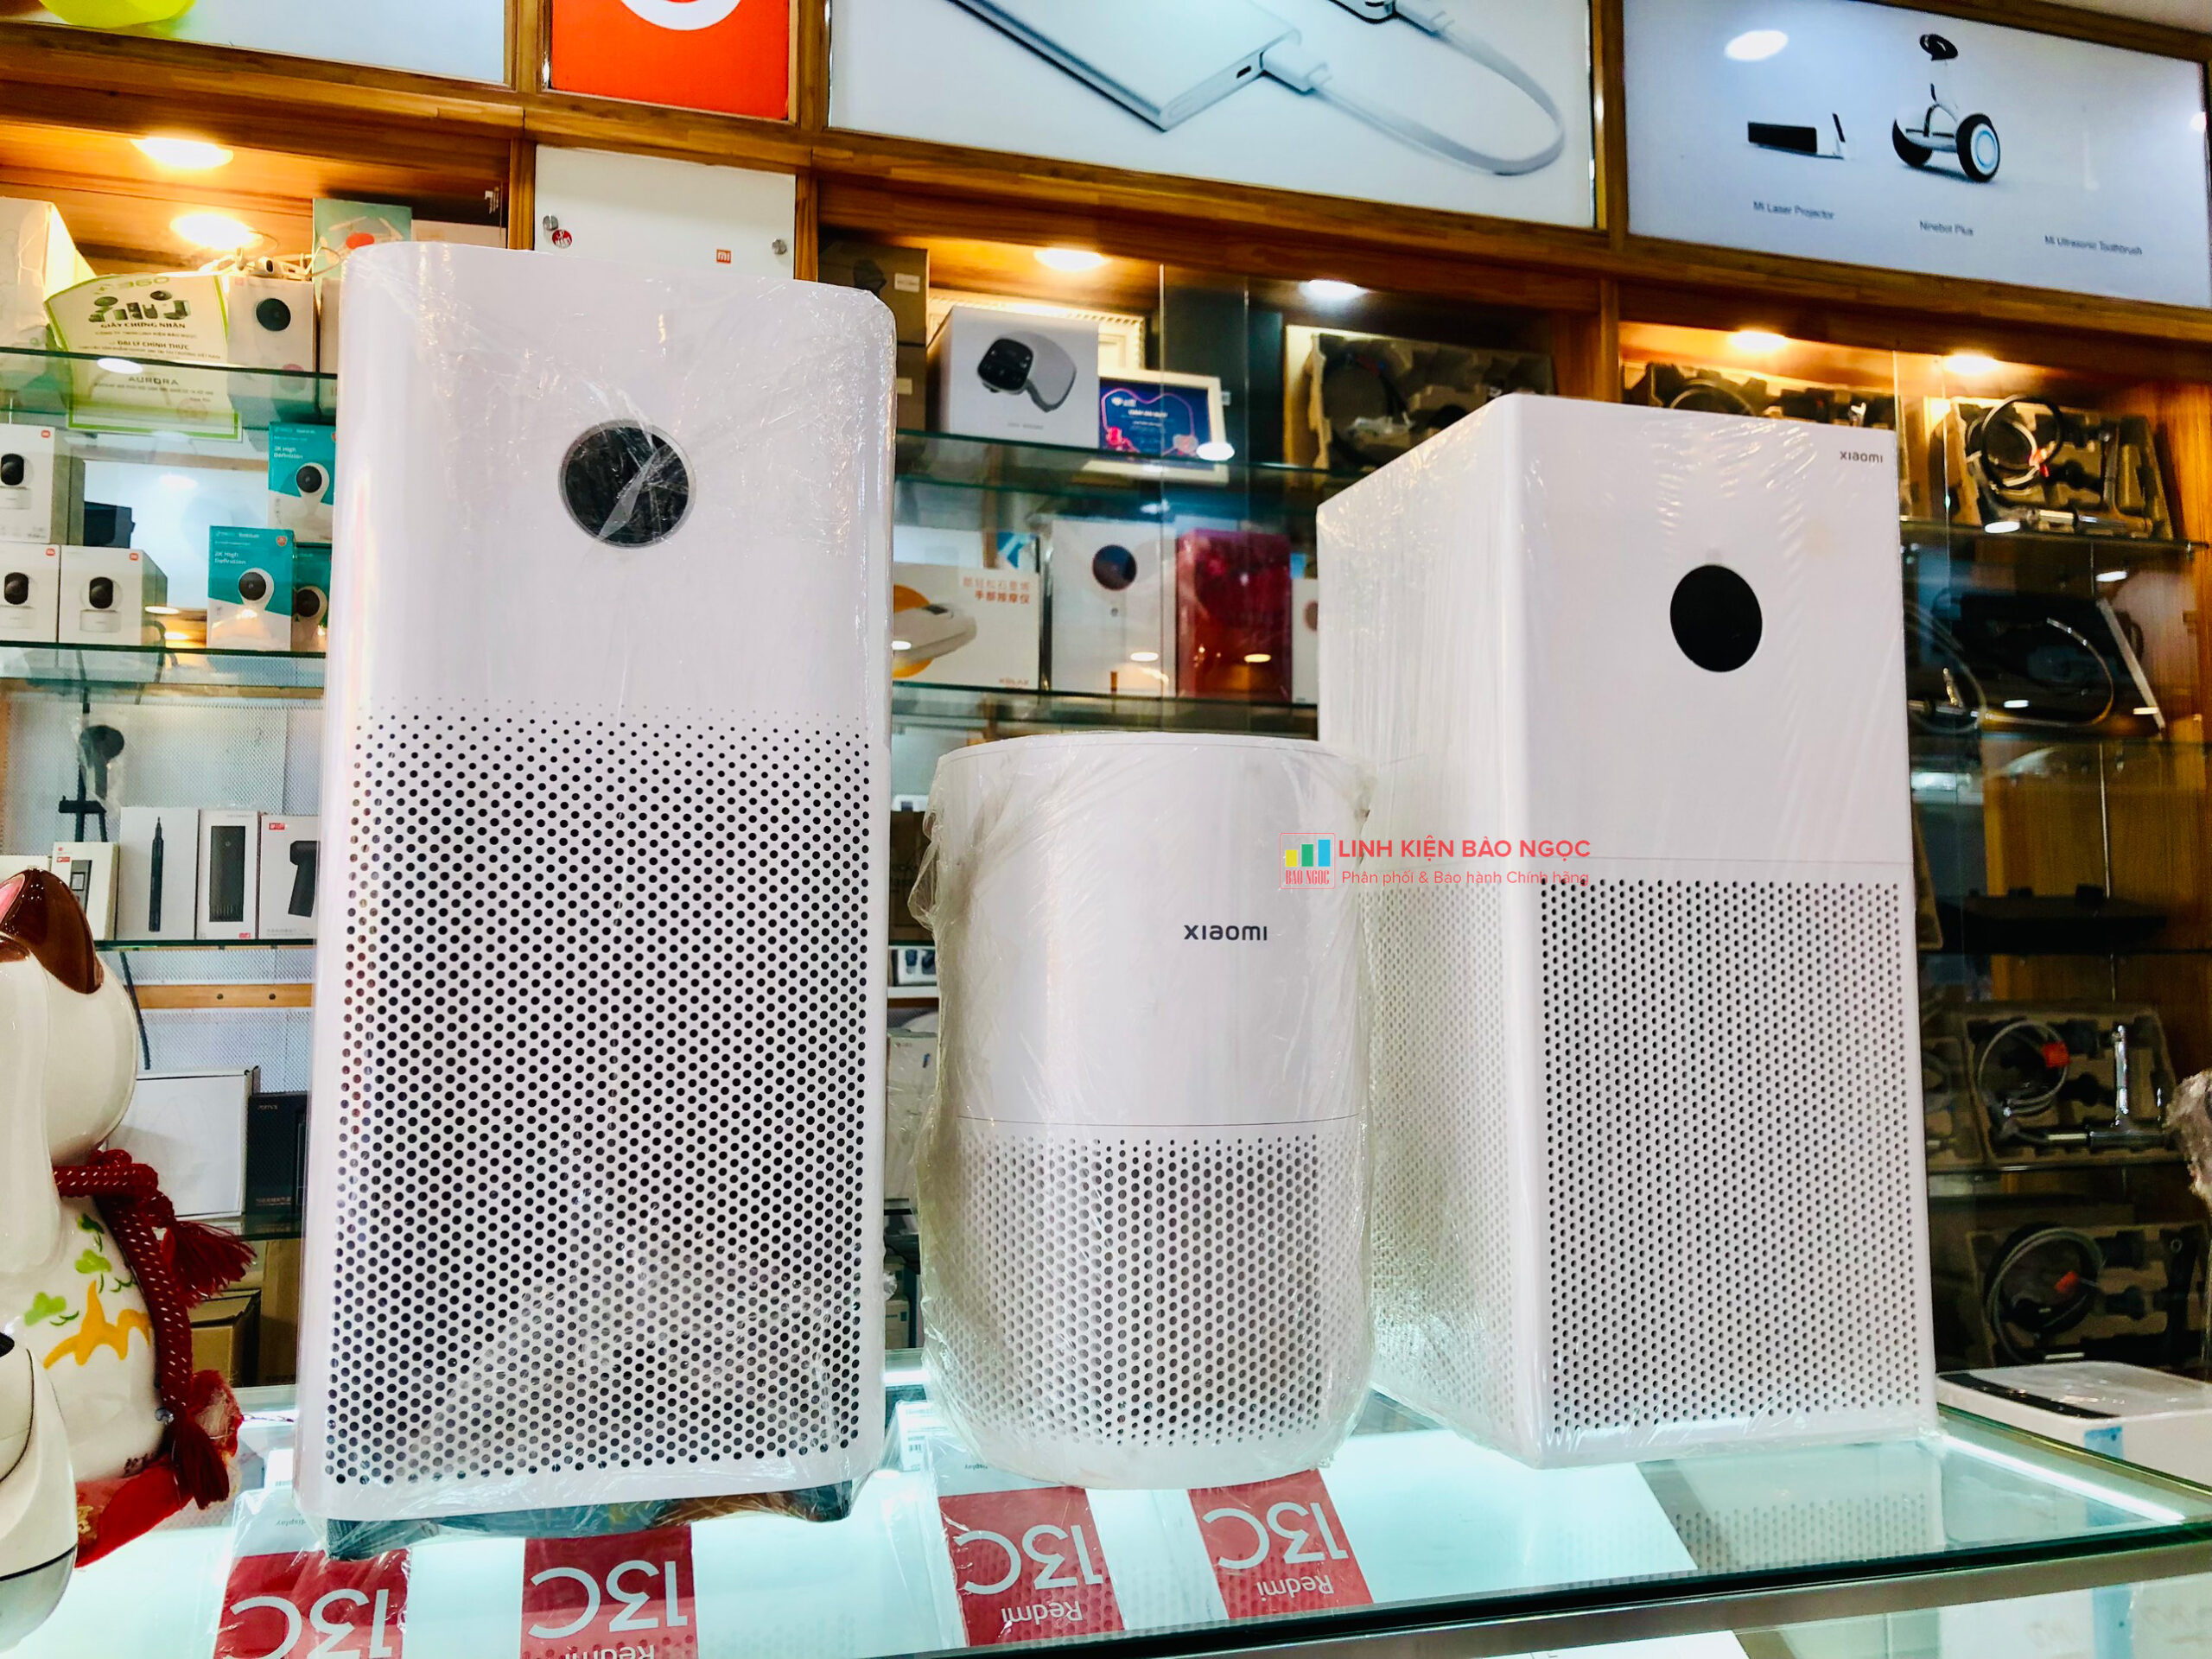 TOP 4 máy lọc không khí Xiaomi TỐT NHẤT đáng mua tại Linh Kiện Bảo Ngọc